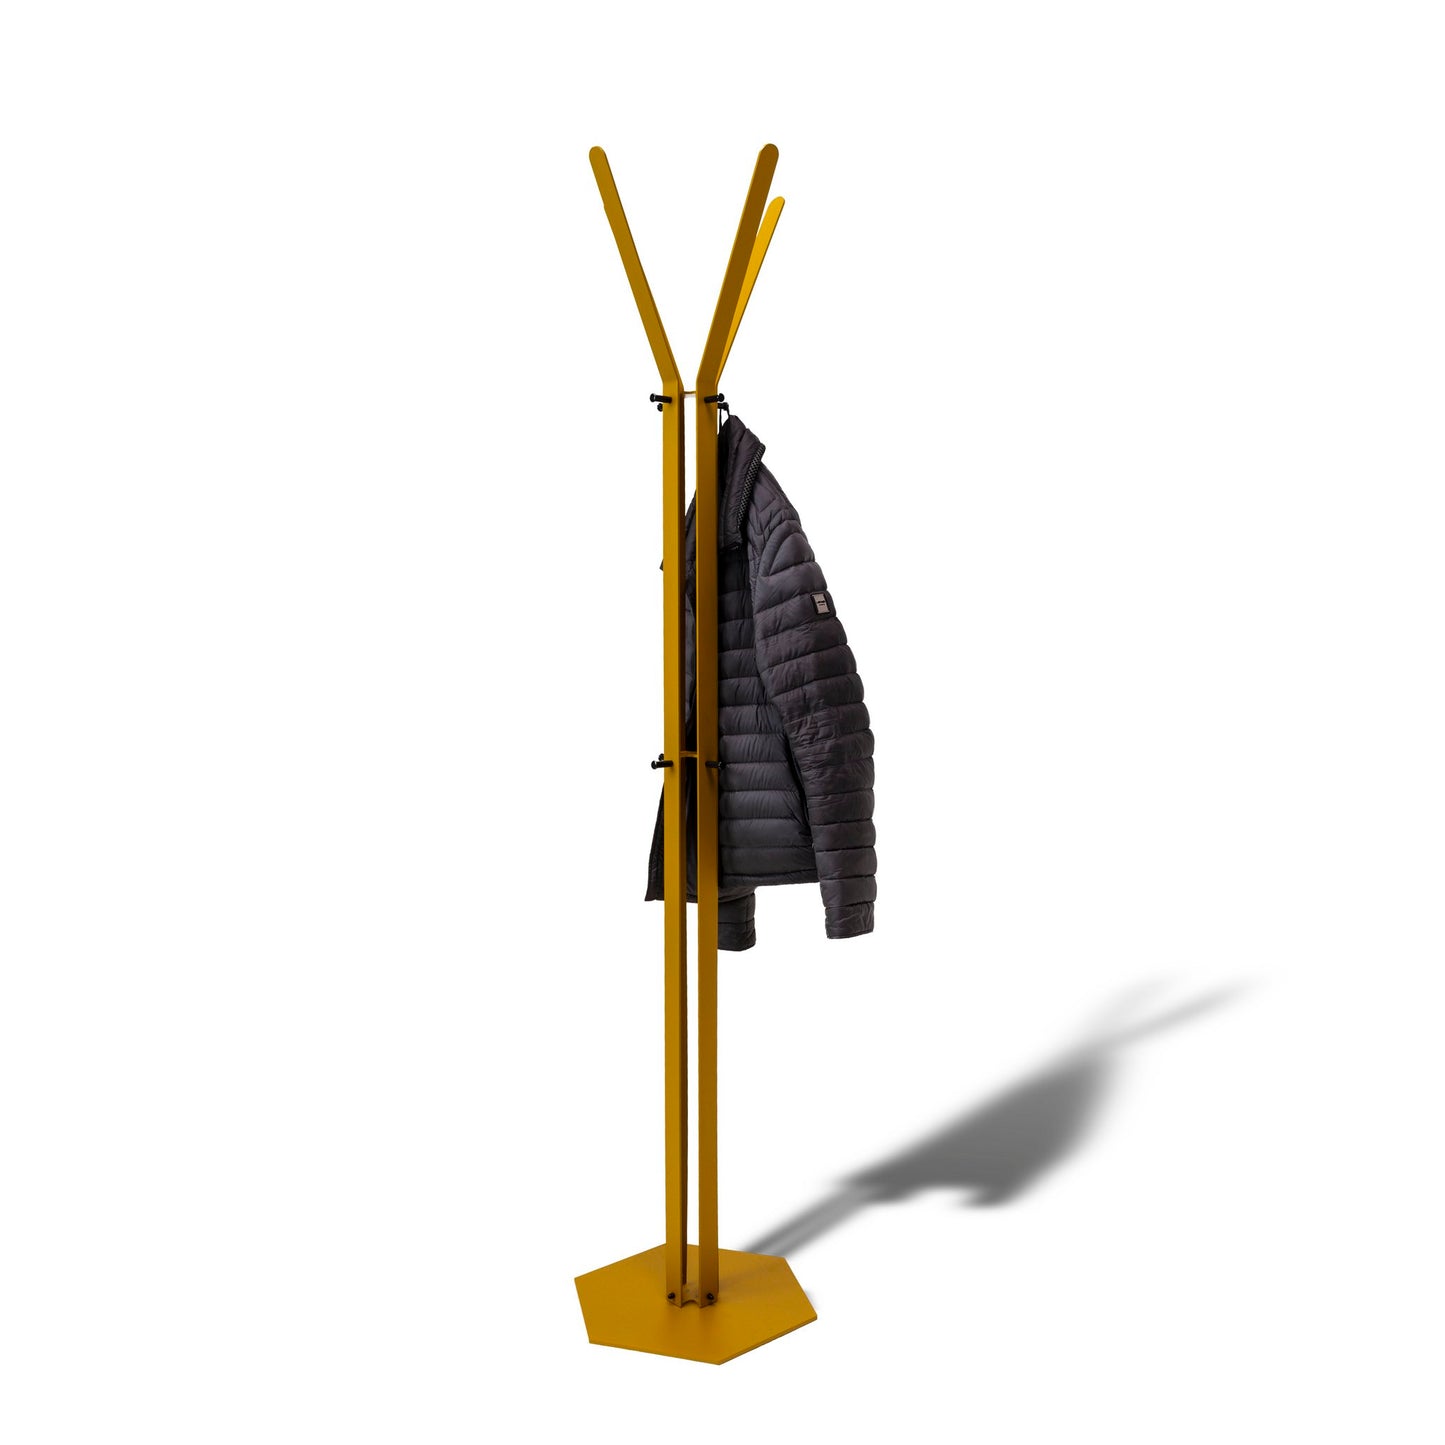 Gorillz Stack Industrial Coat Rack Standing 12 Coat Hooks - Yellow